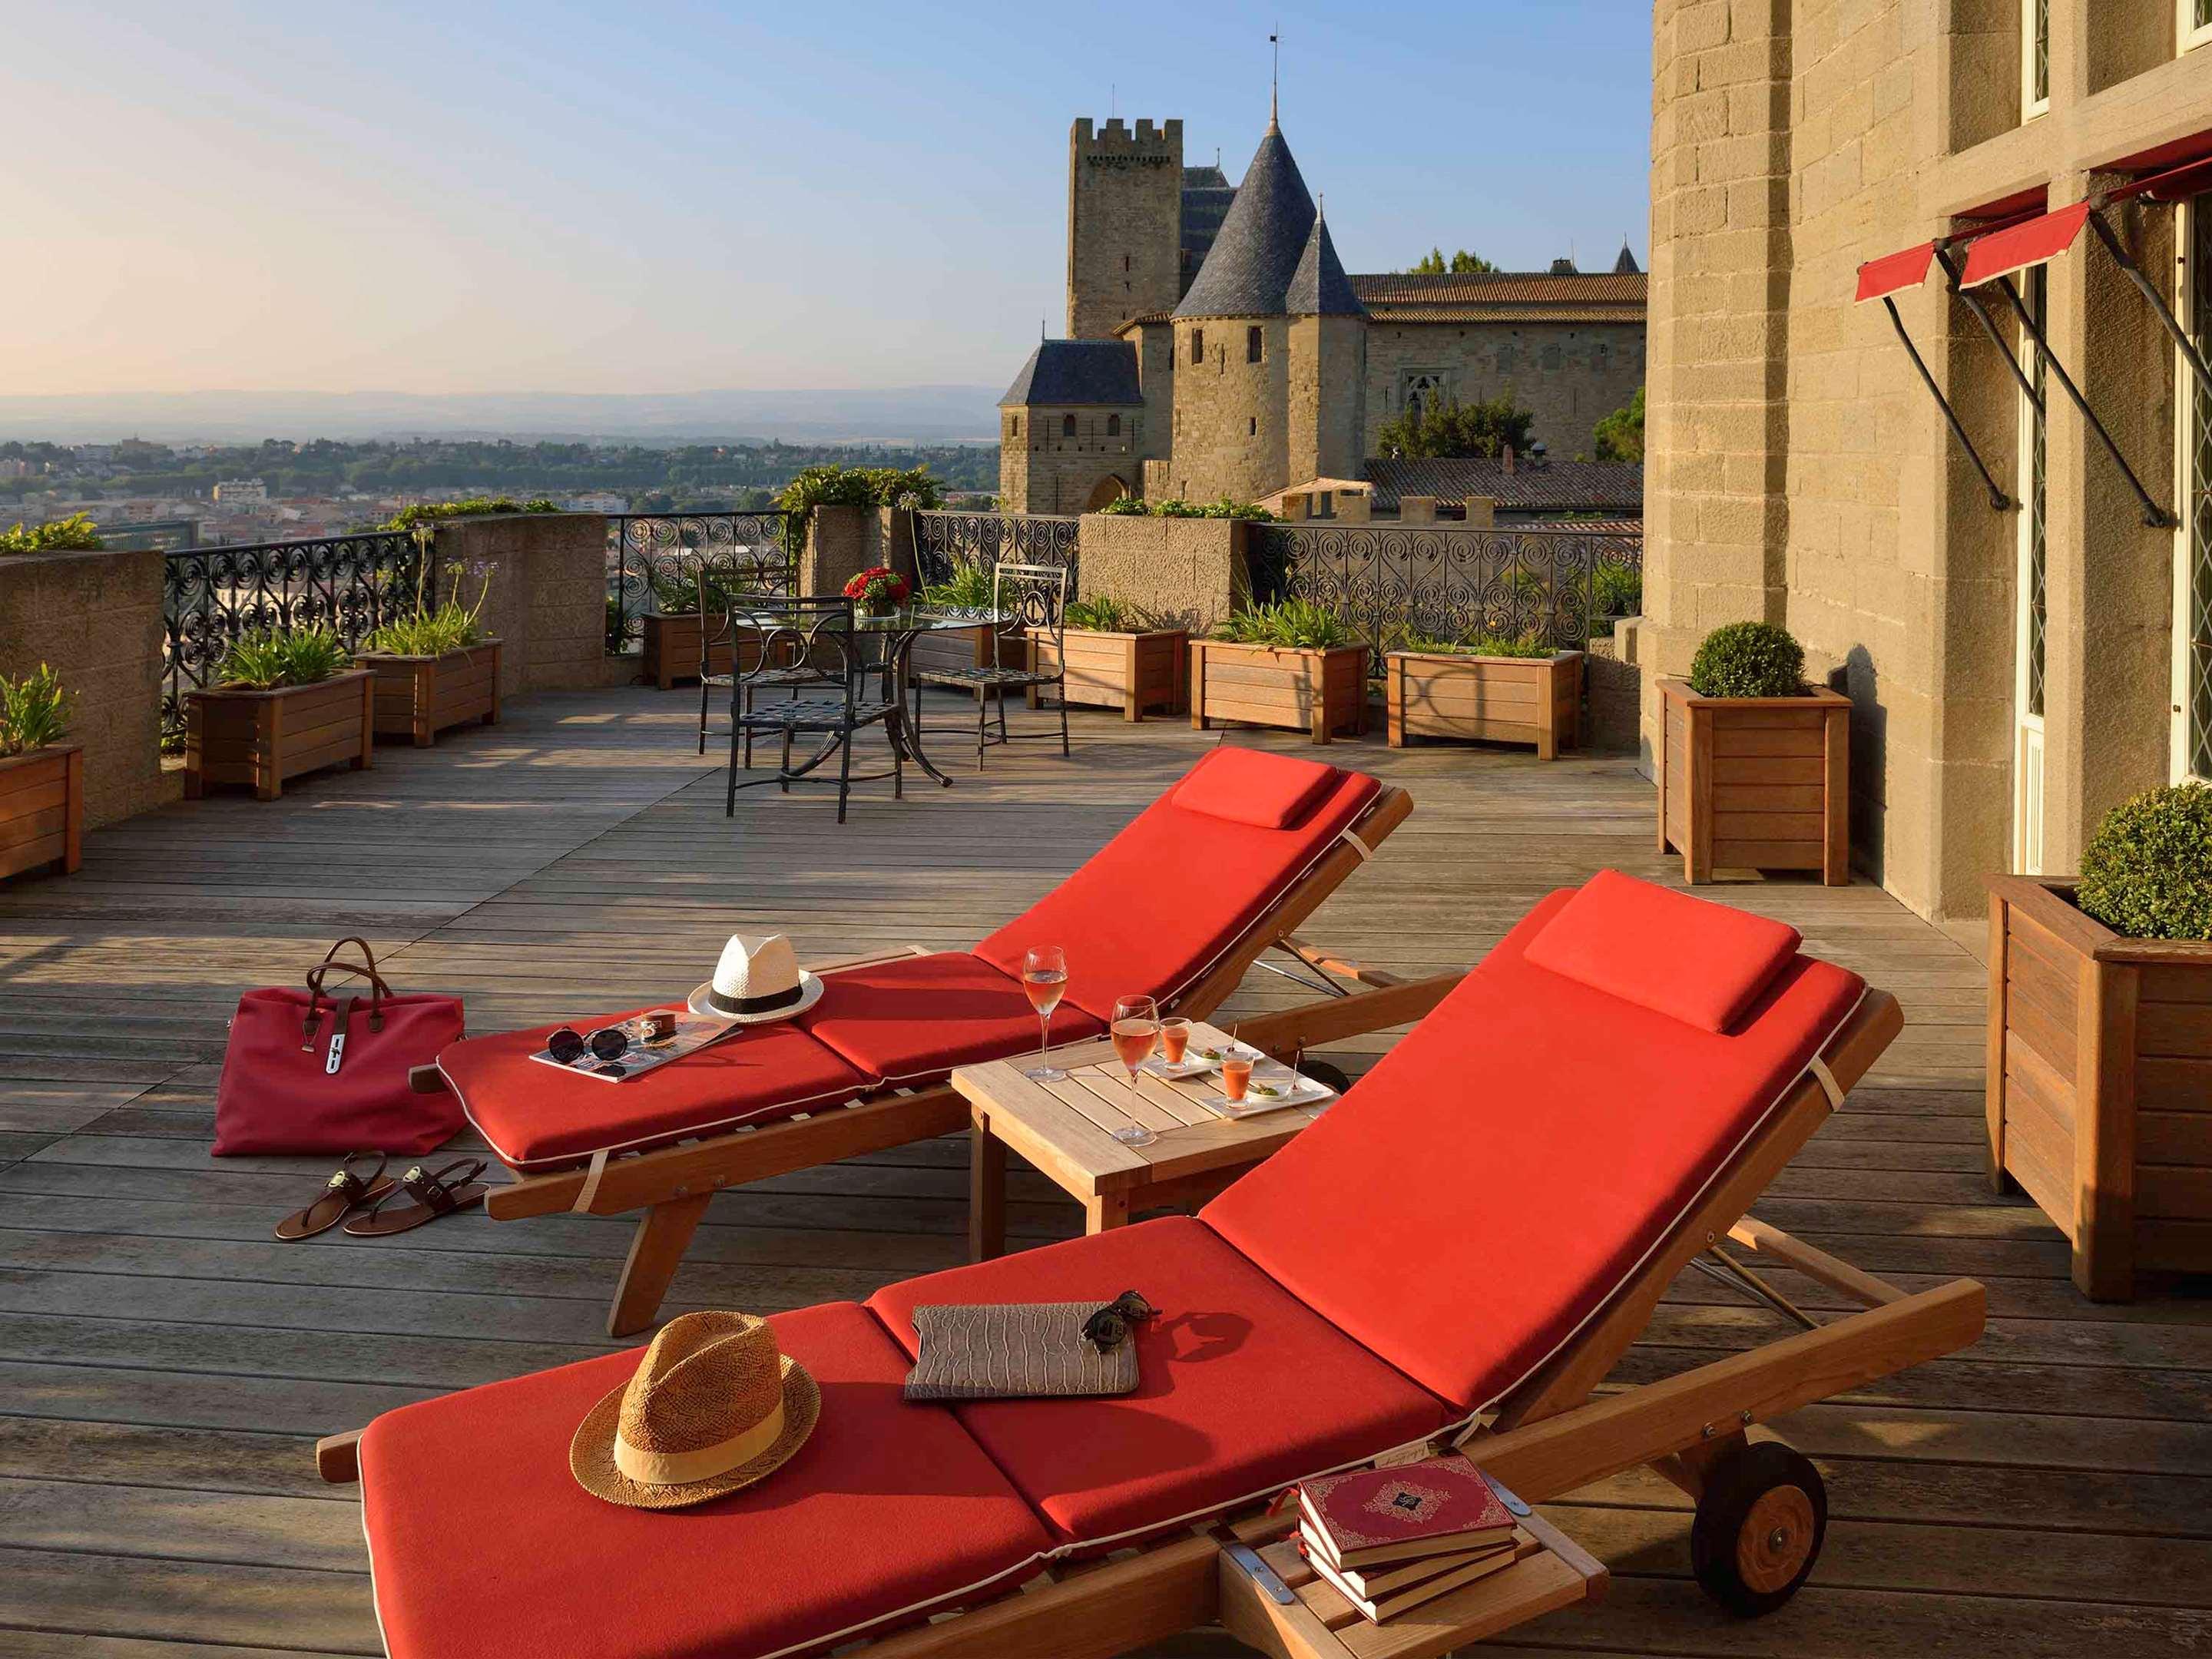 CERISE Carcassonne Sud- Tourist Class Carcassonne, France Hotels